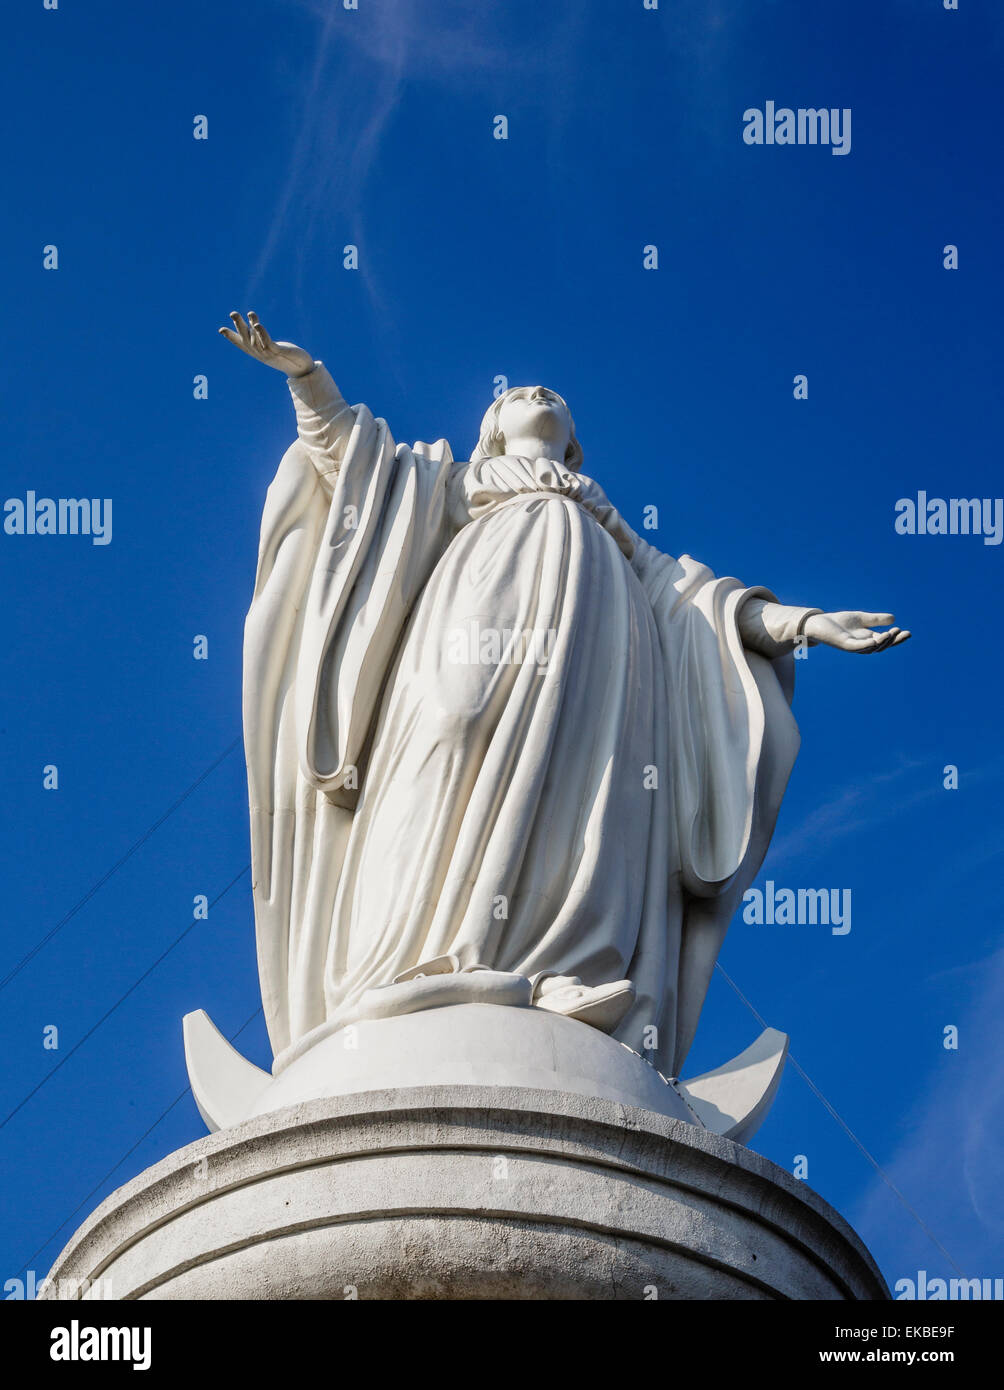 Vergine Maria statua a Cerro San Cristobal, Santiago del Cile, Sud America Foto Stock